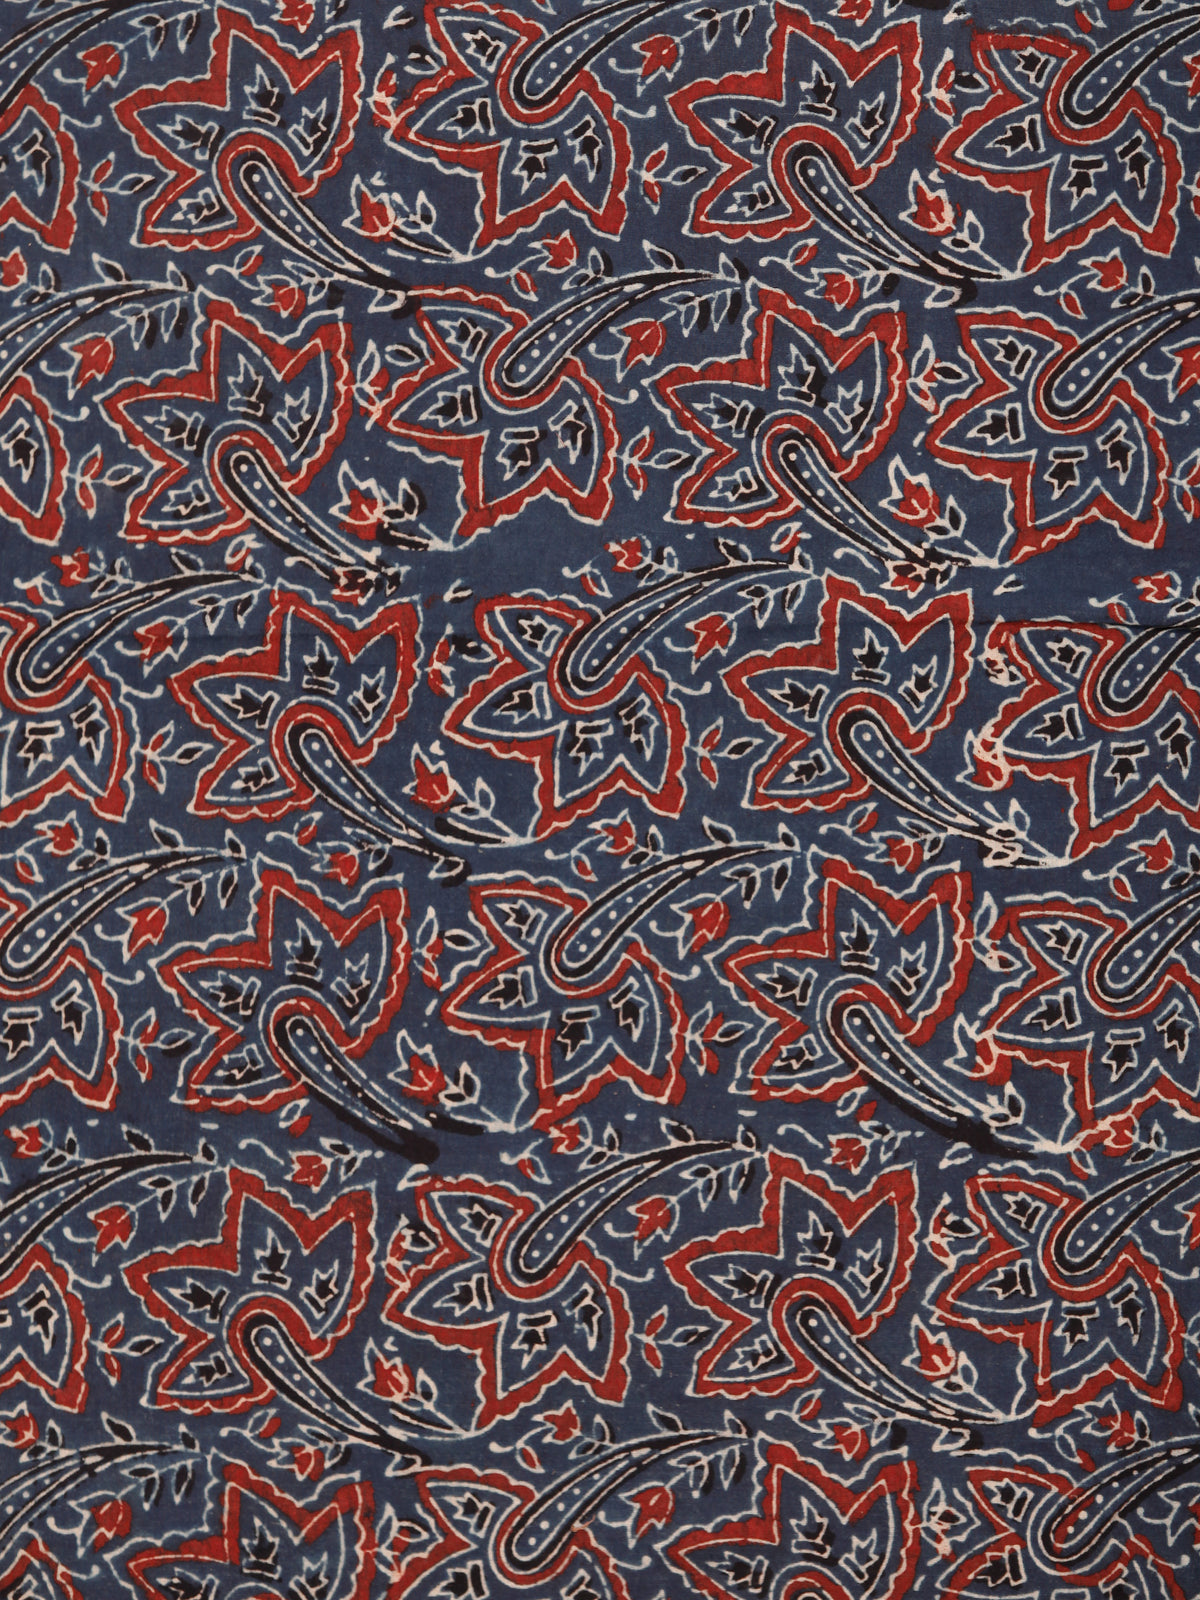 Indigo Maroon Black Beige Ajrakh Block Printed Cotton Fabric Per Meter - F003F1764